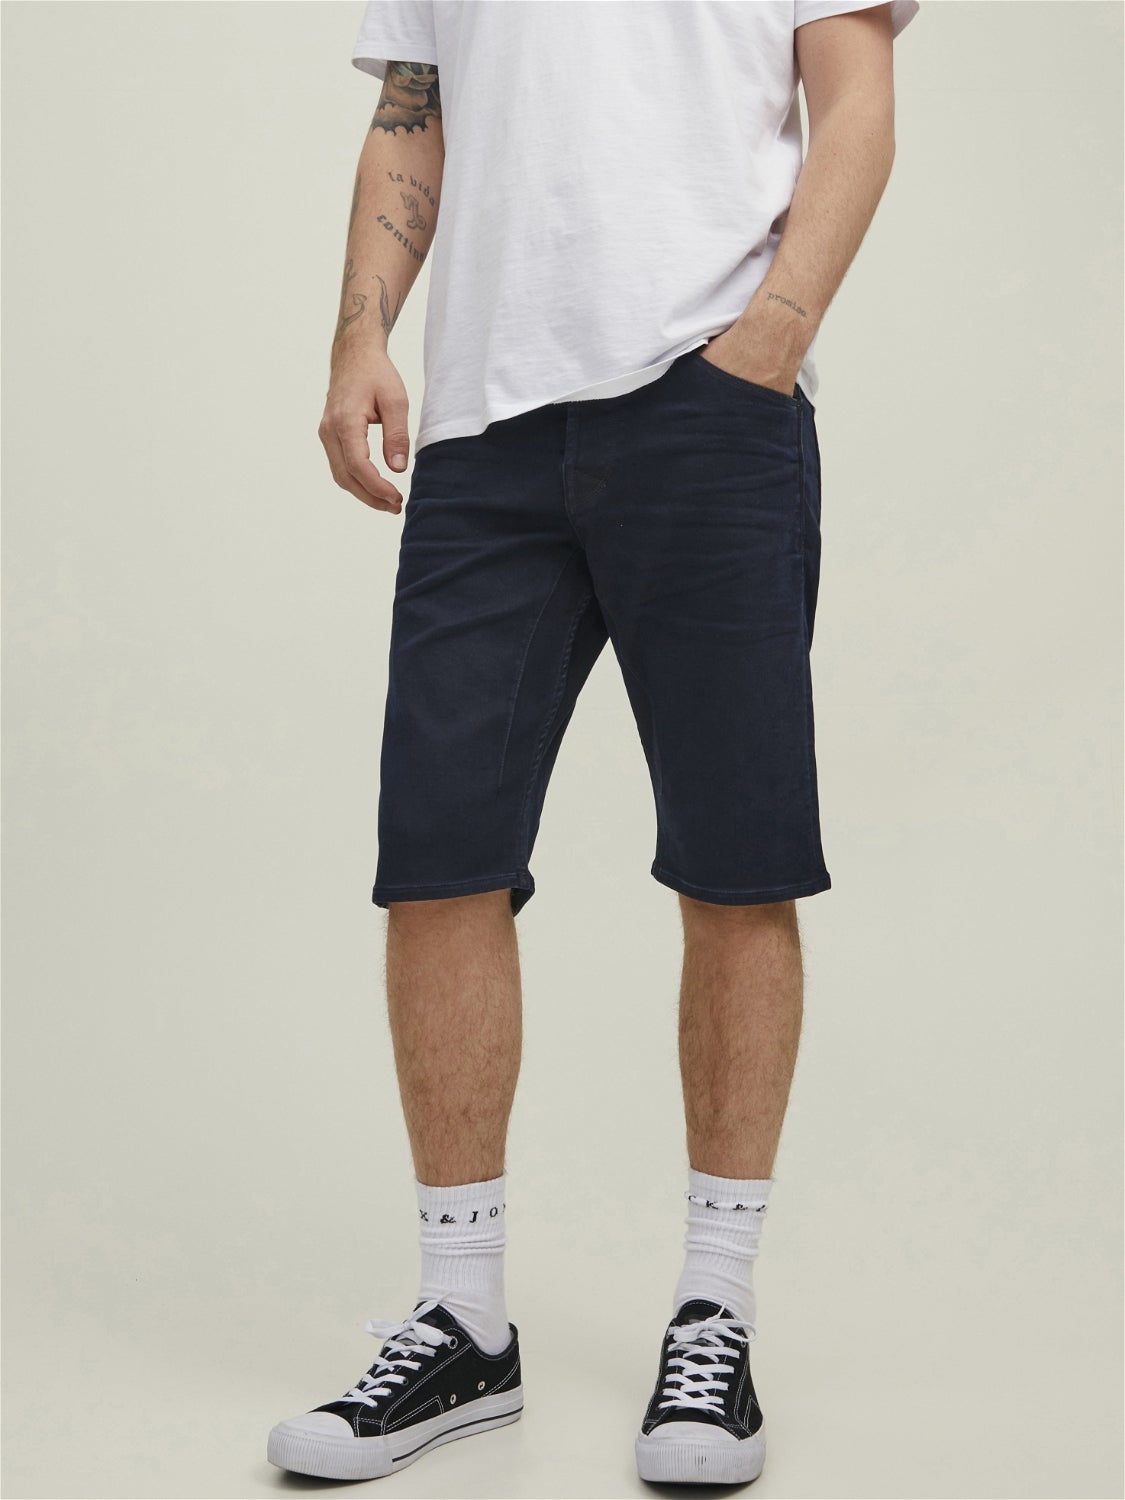 Blue XL discount 57% MEN FASHION Jeans Basic Jack & Jones shorts jeans 